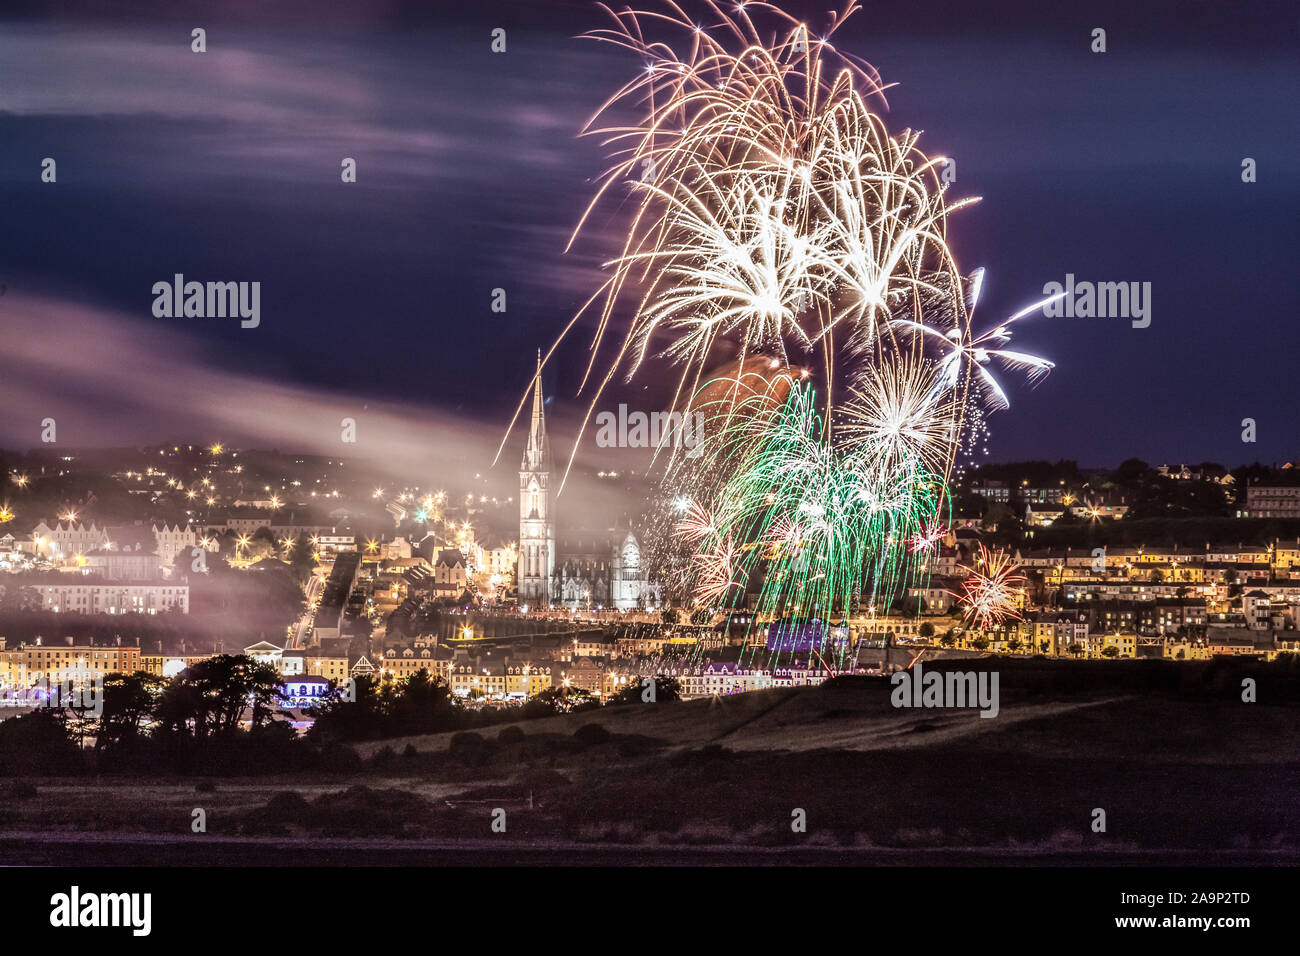 Cobh, Cork, Irland. 14. August 2014. Das jährliche Feuerwerk am Ende der Cobh Völker Regatta ab Crosshaven am Sonntag Abend gesehen. Stockfoto